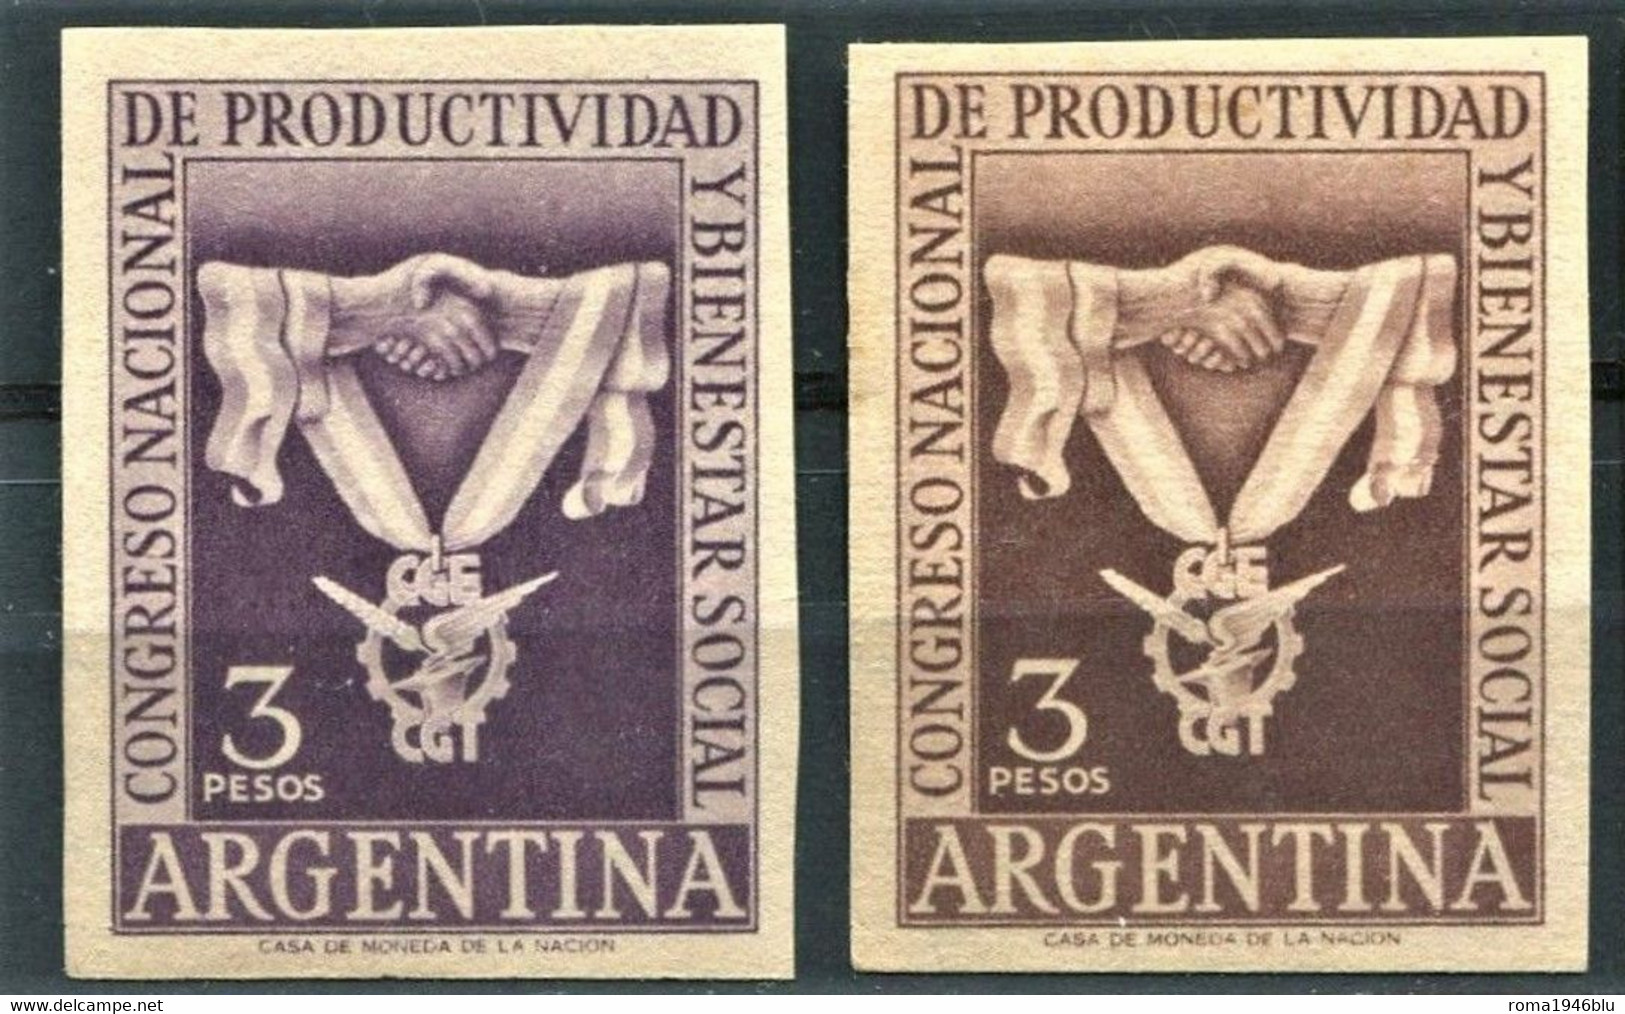 ARGENTINA CONGRESO NACIONAL DE PRODUCTIVIDAD Y BIENESTAR SOCIAL - Cinderellas